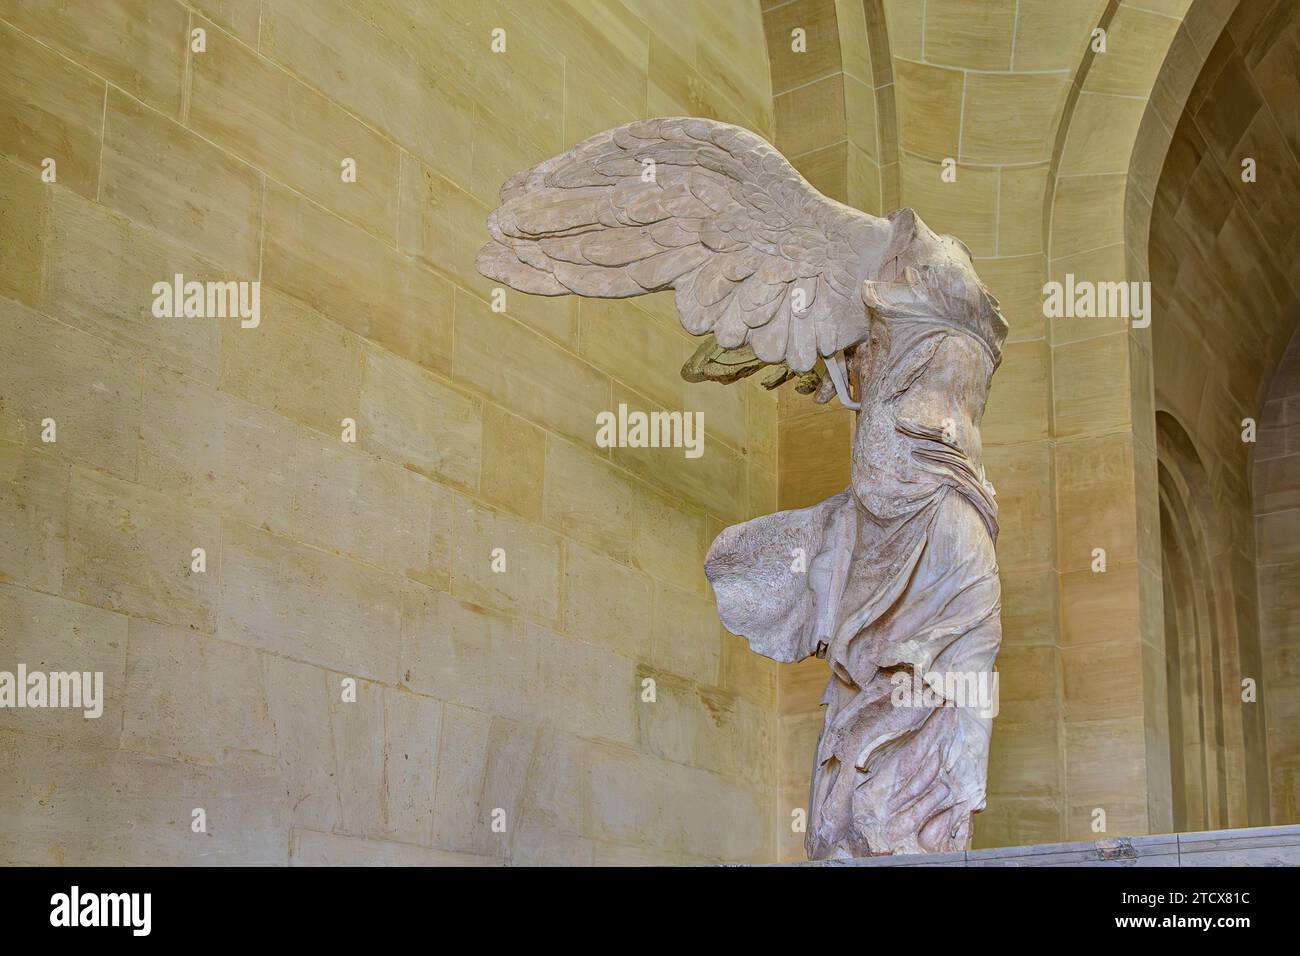 La victoire ailée de Samothrace, l'une des statues les plus célèbres du Louvre, orne le sommet de l'escalier monumental Daru , Paris, France Banque D'Images